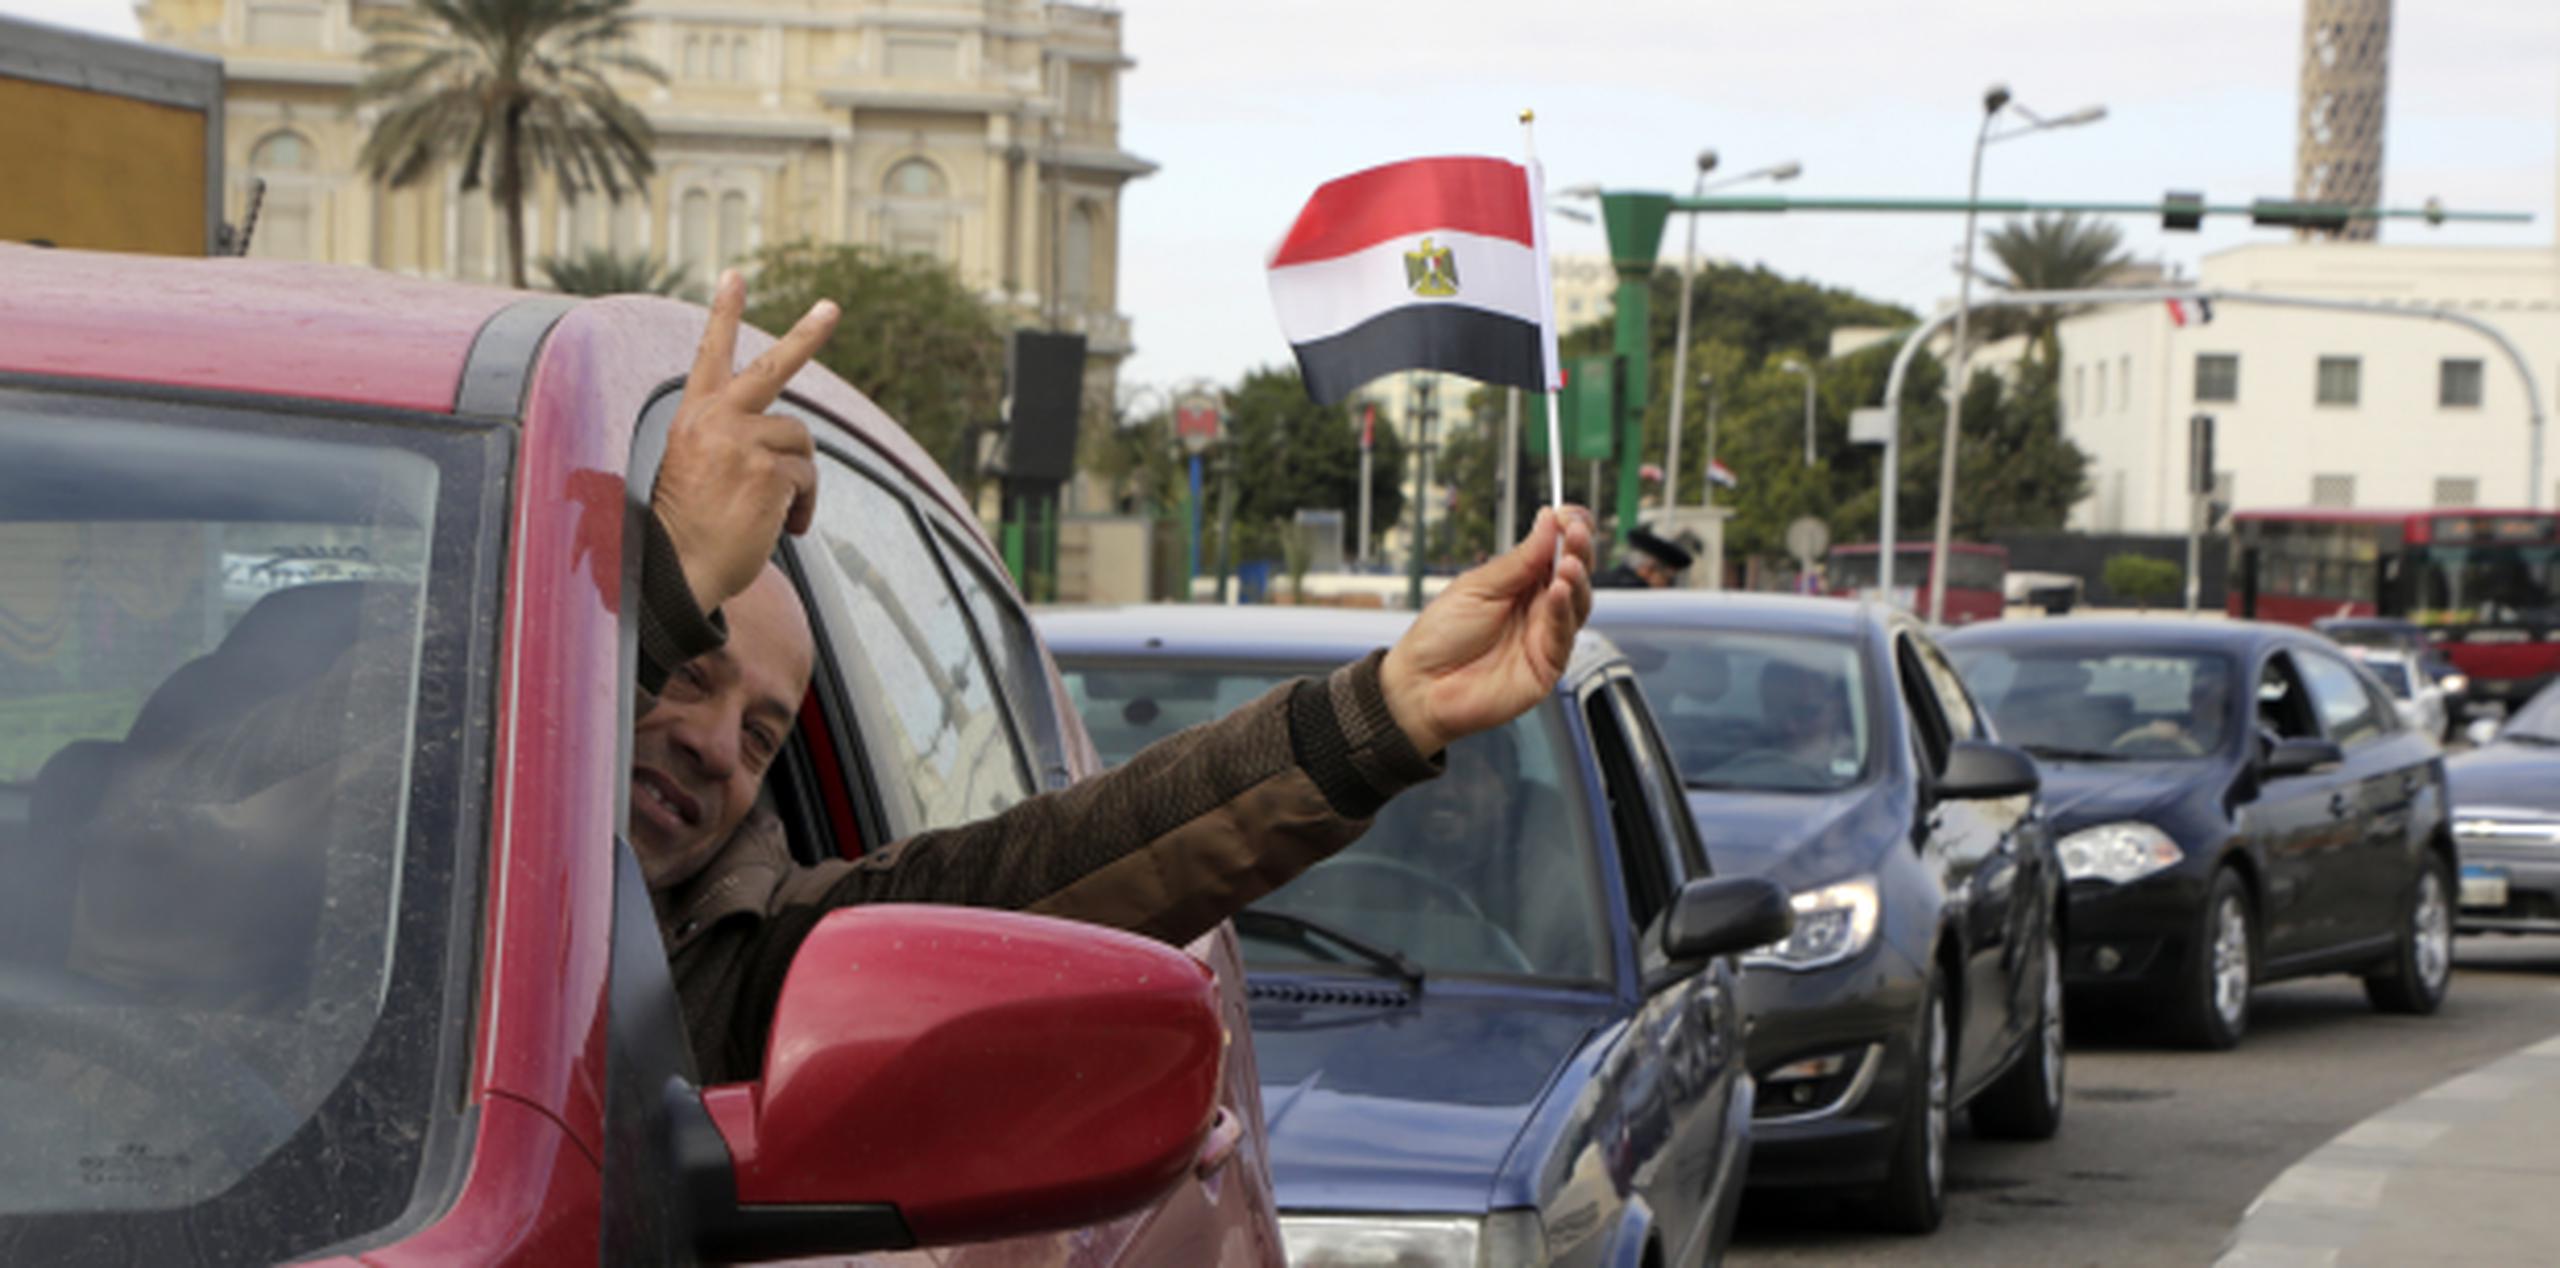 Los accidentes de tráfico causan más de 10,000 muertes al año en Egipto. (AP)